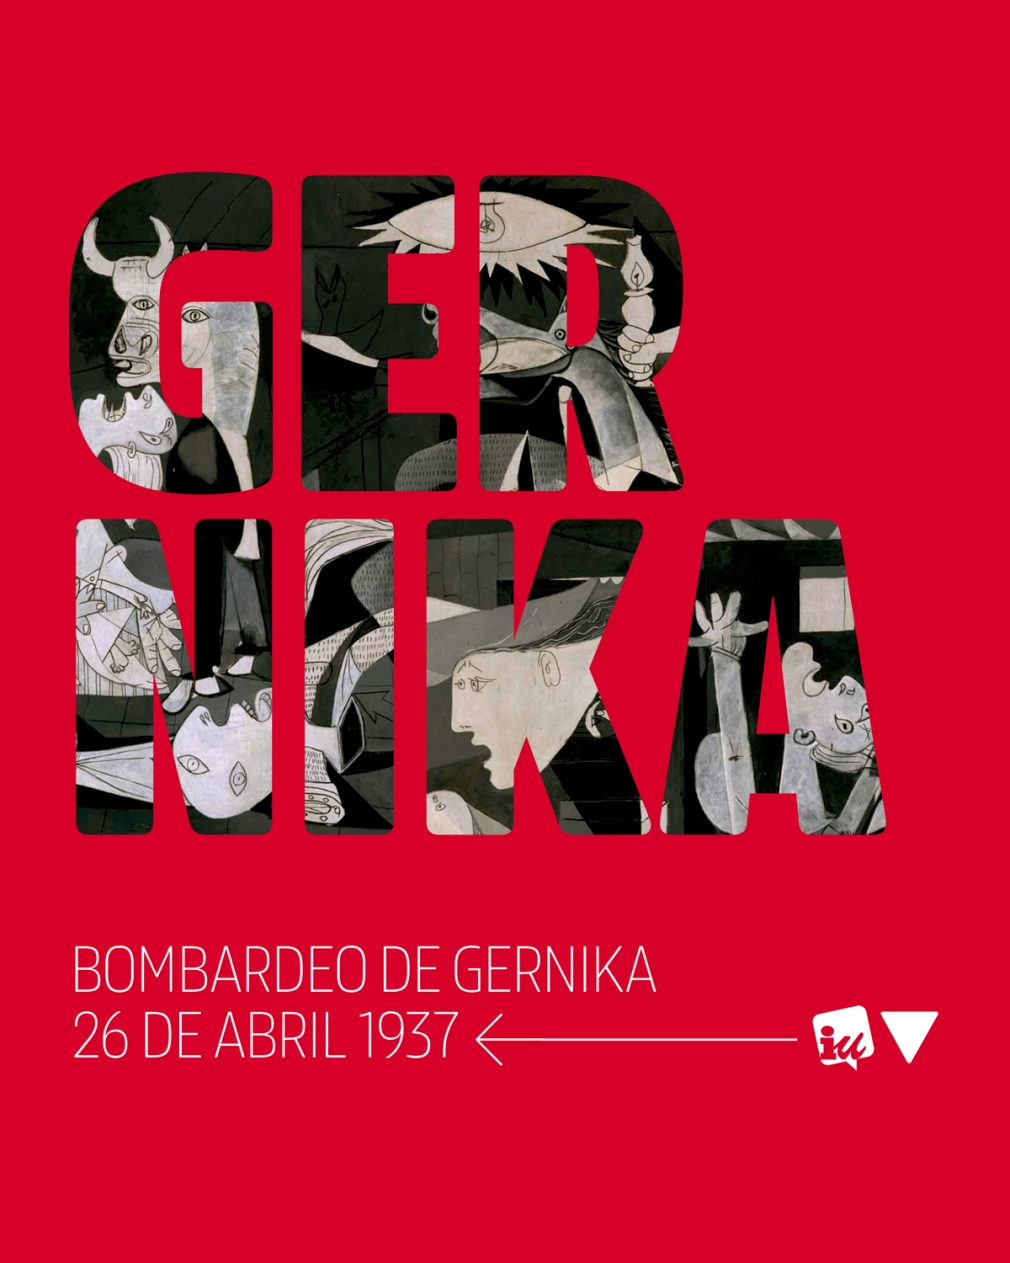 26 de abril de 1937: EL CRIMINAL BOMBARDEO DE GERNIKA